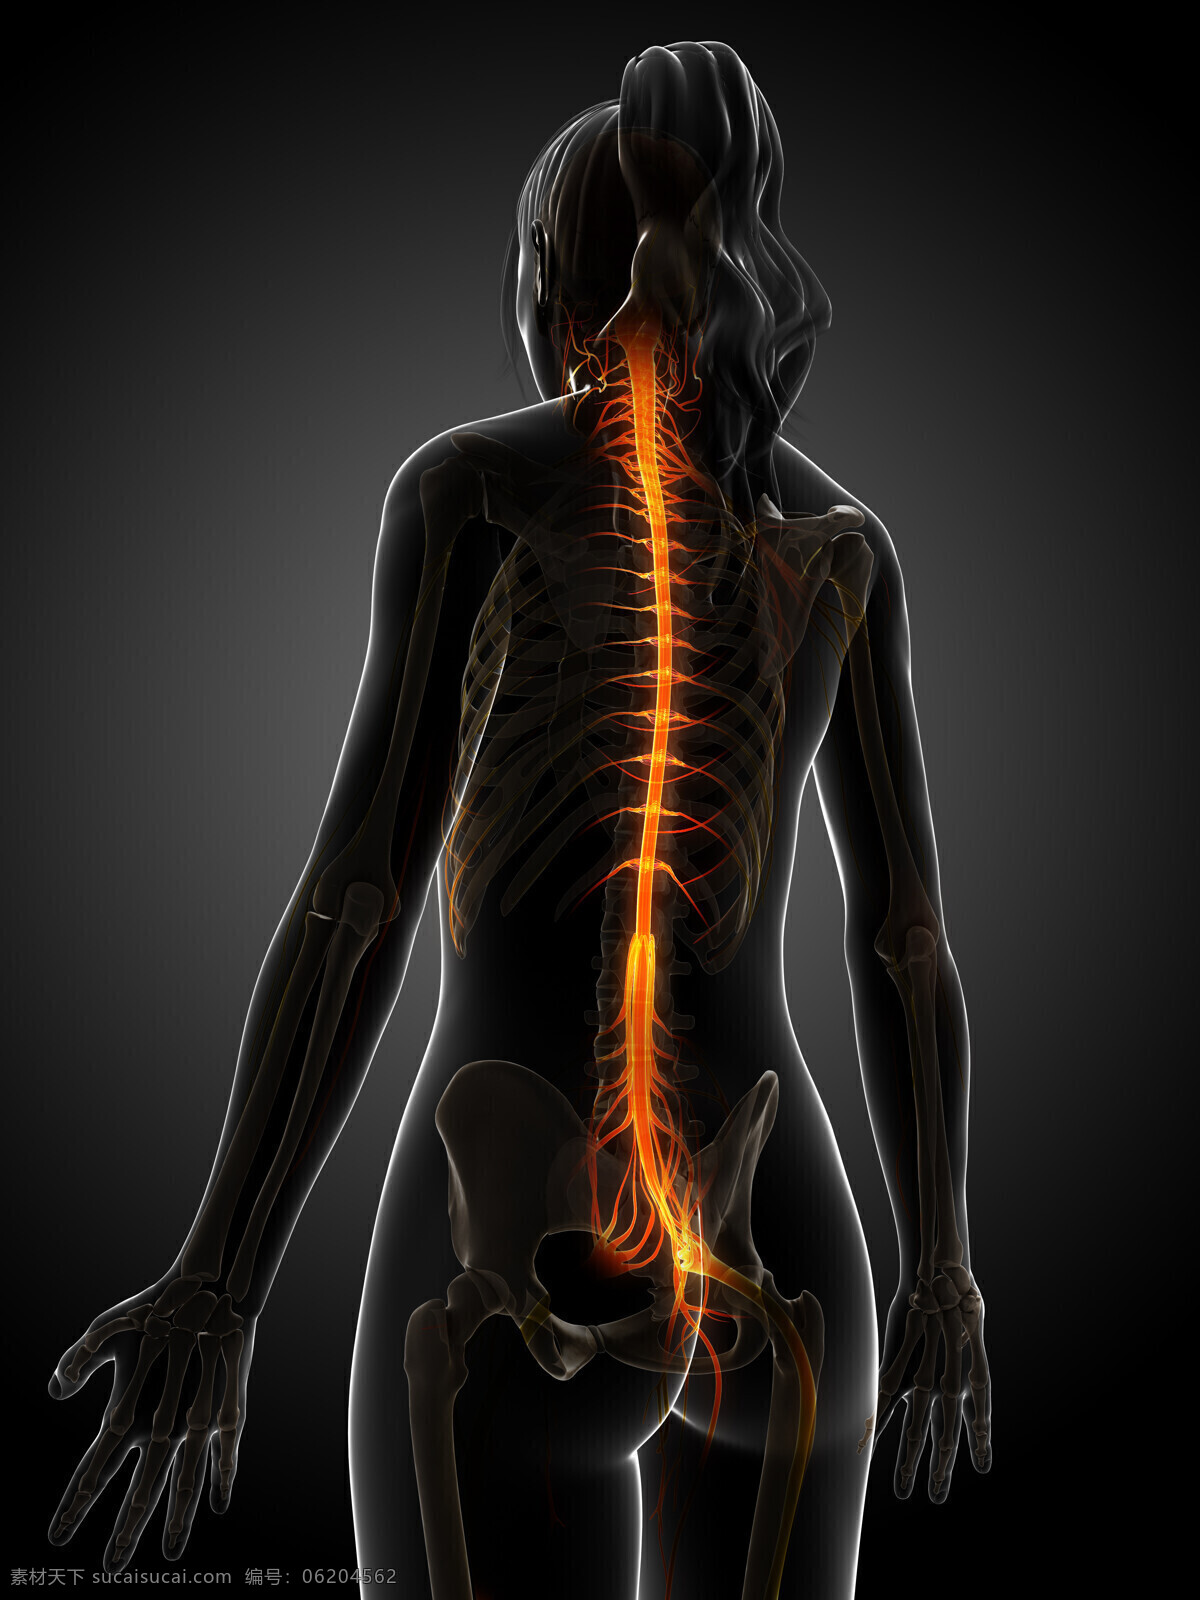 女性 骨骼 脊椎 神经 女性器官 女性骨骼 神经组织 人体器官 医学图片 医疗护理 现代科技